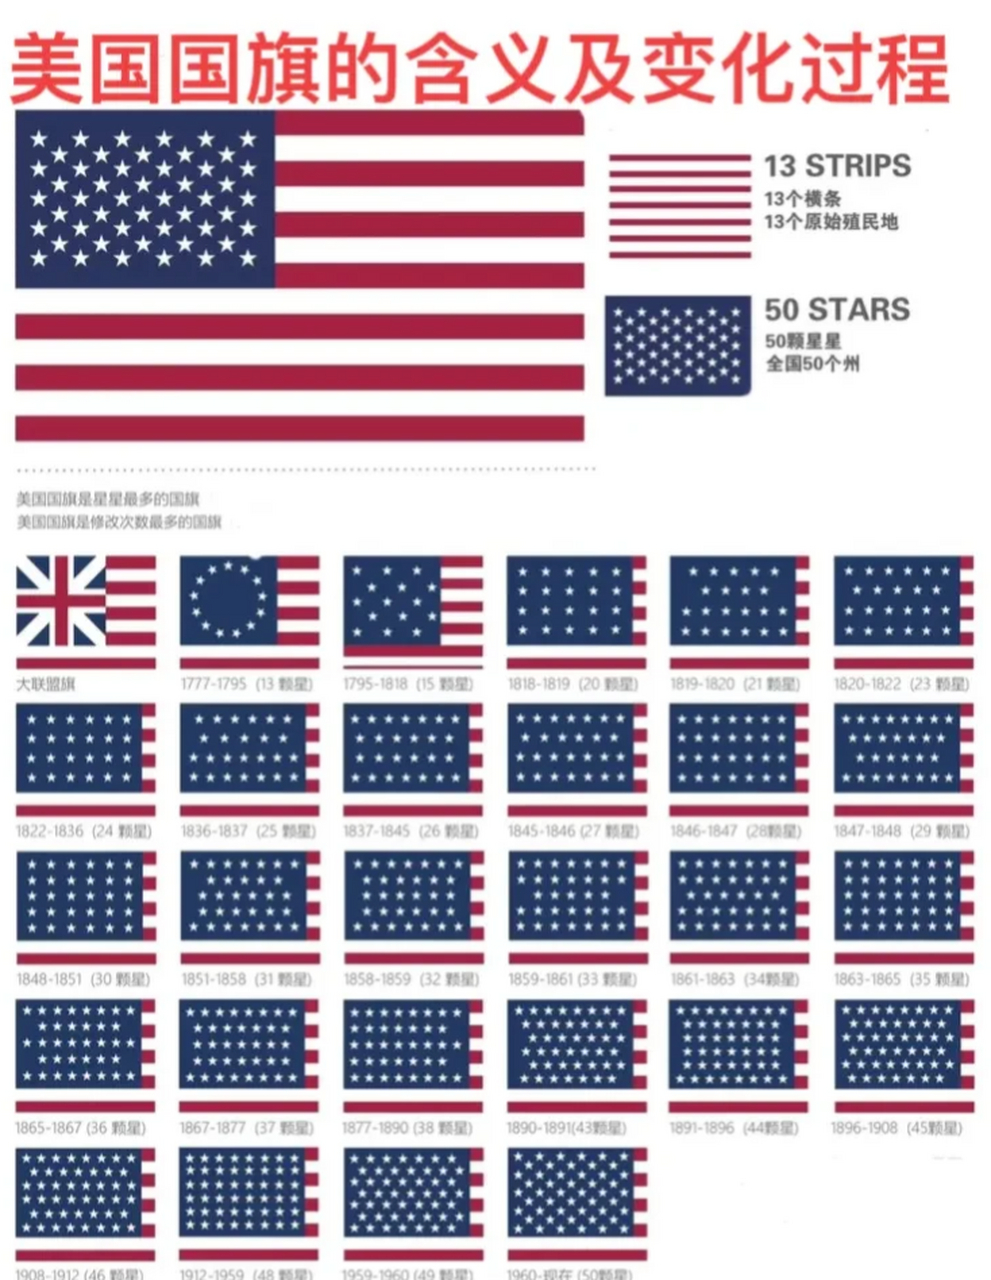 美国国旗的设计和演变是一个引人入胜的故事